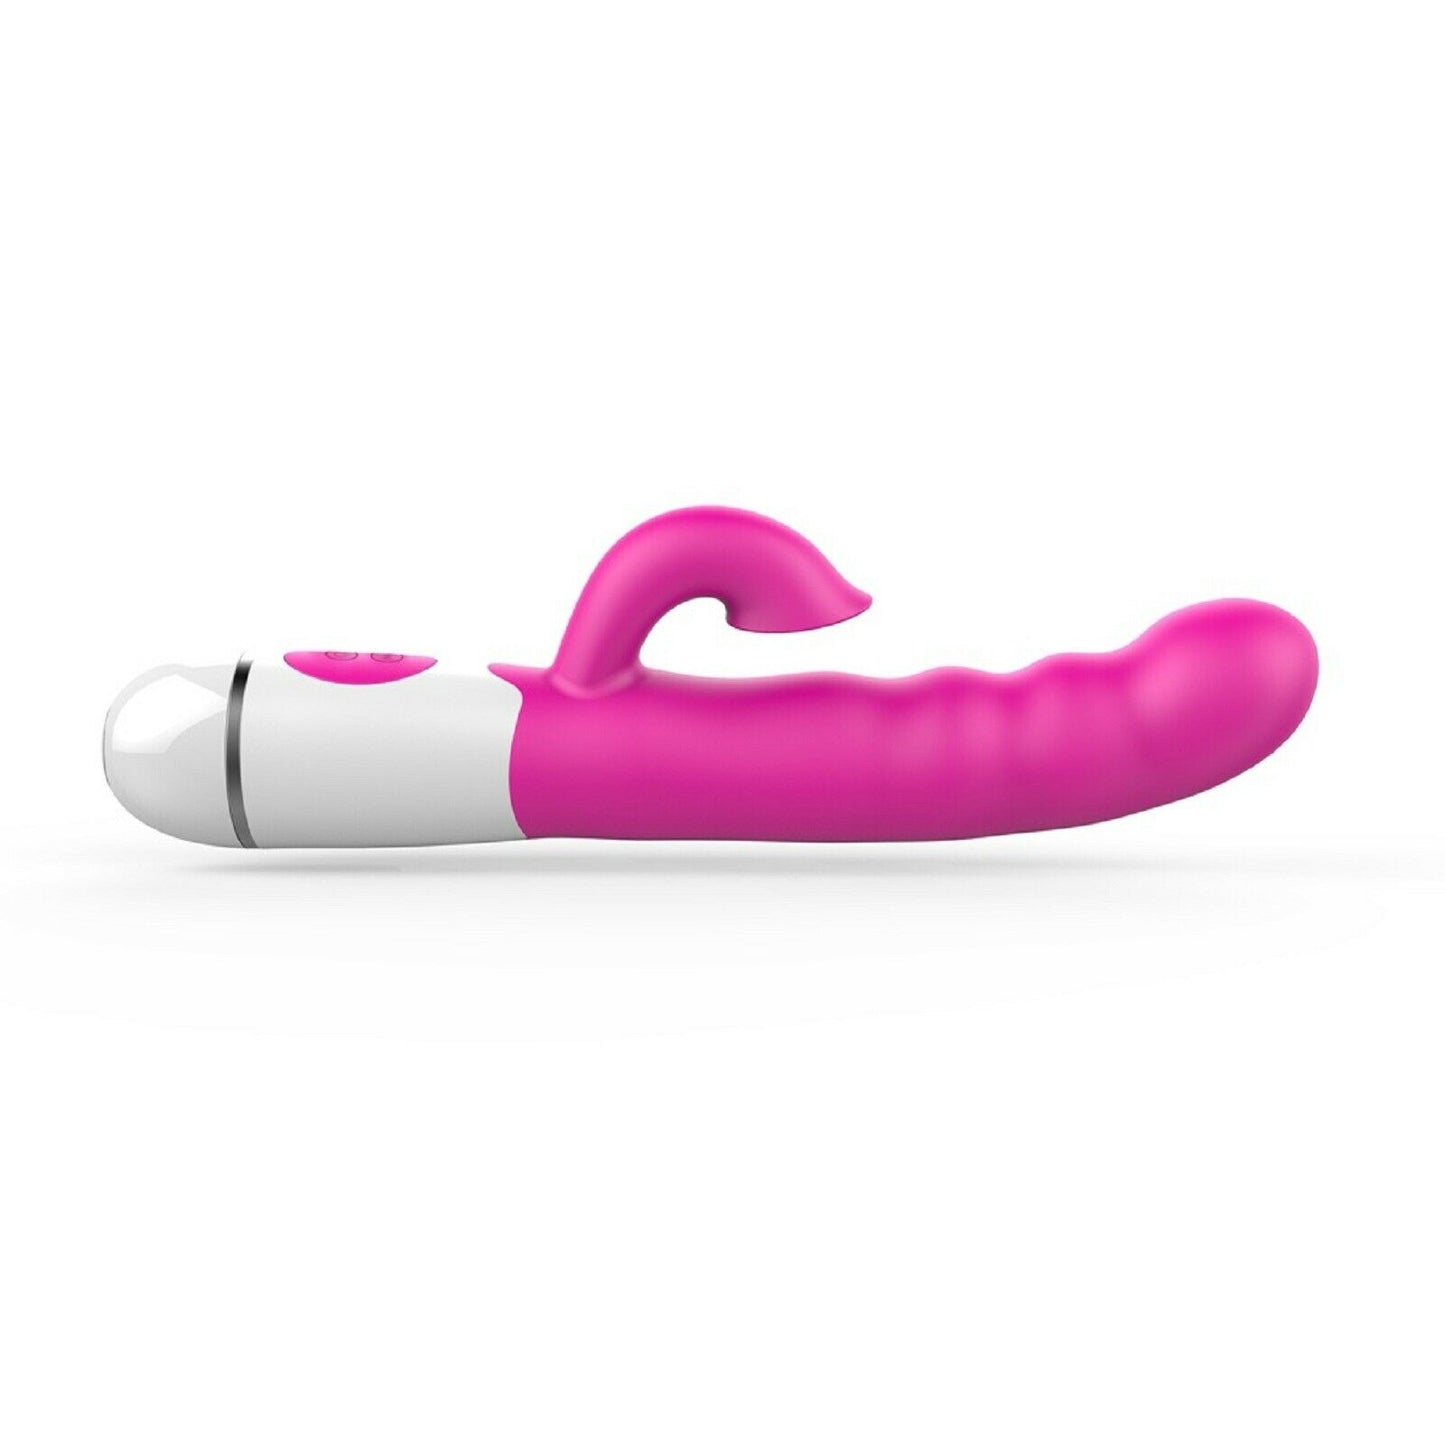 10" Large Rabbit Vibrator Big Dildo Clit G-spot Clit Stimulator Female Sex Toy